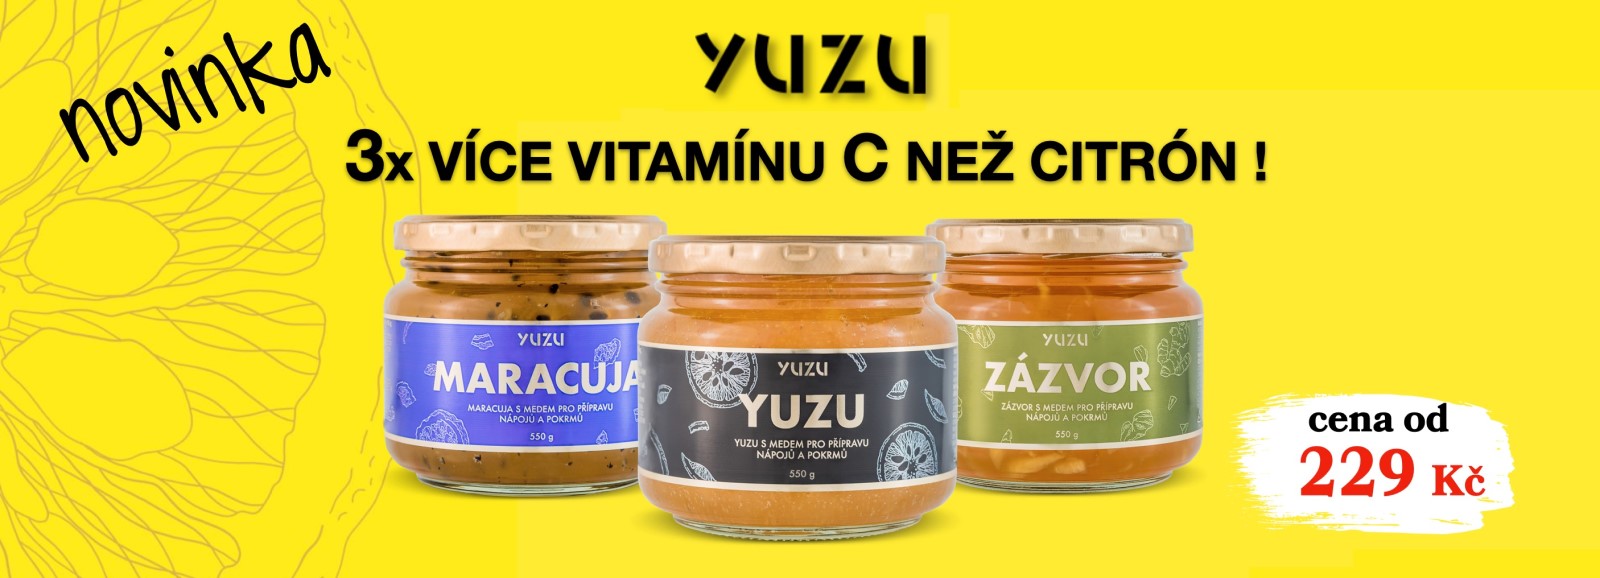 yuzu fermentovany vitaminovy a citrusovy napoj